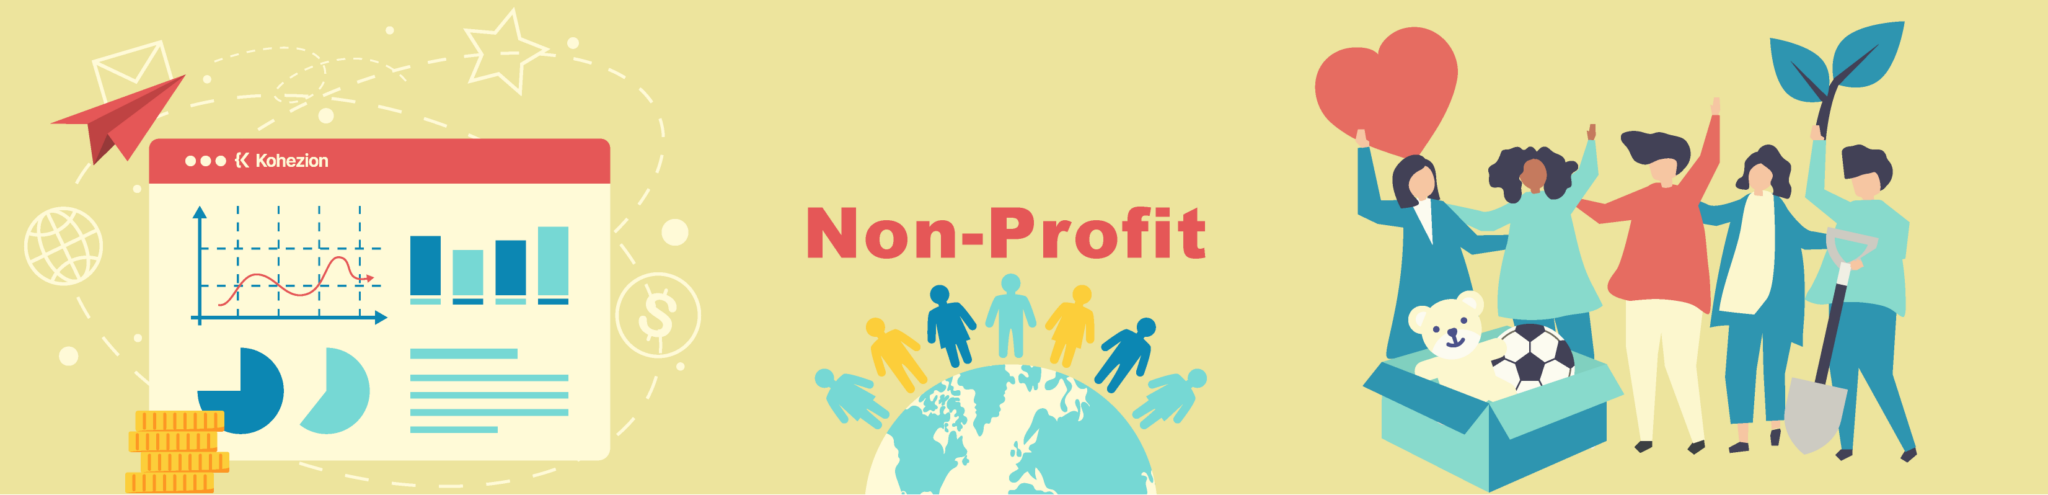 Non-profit-banner